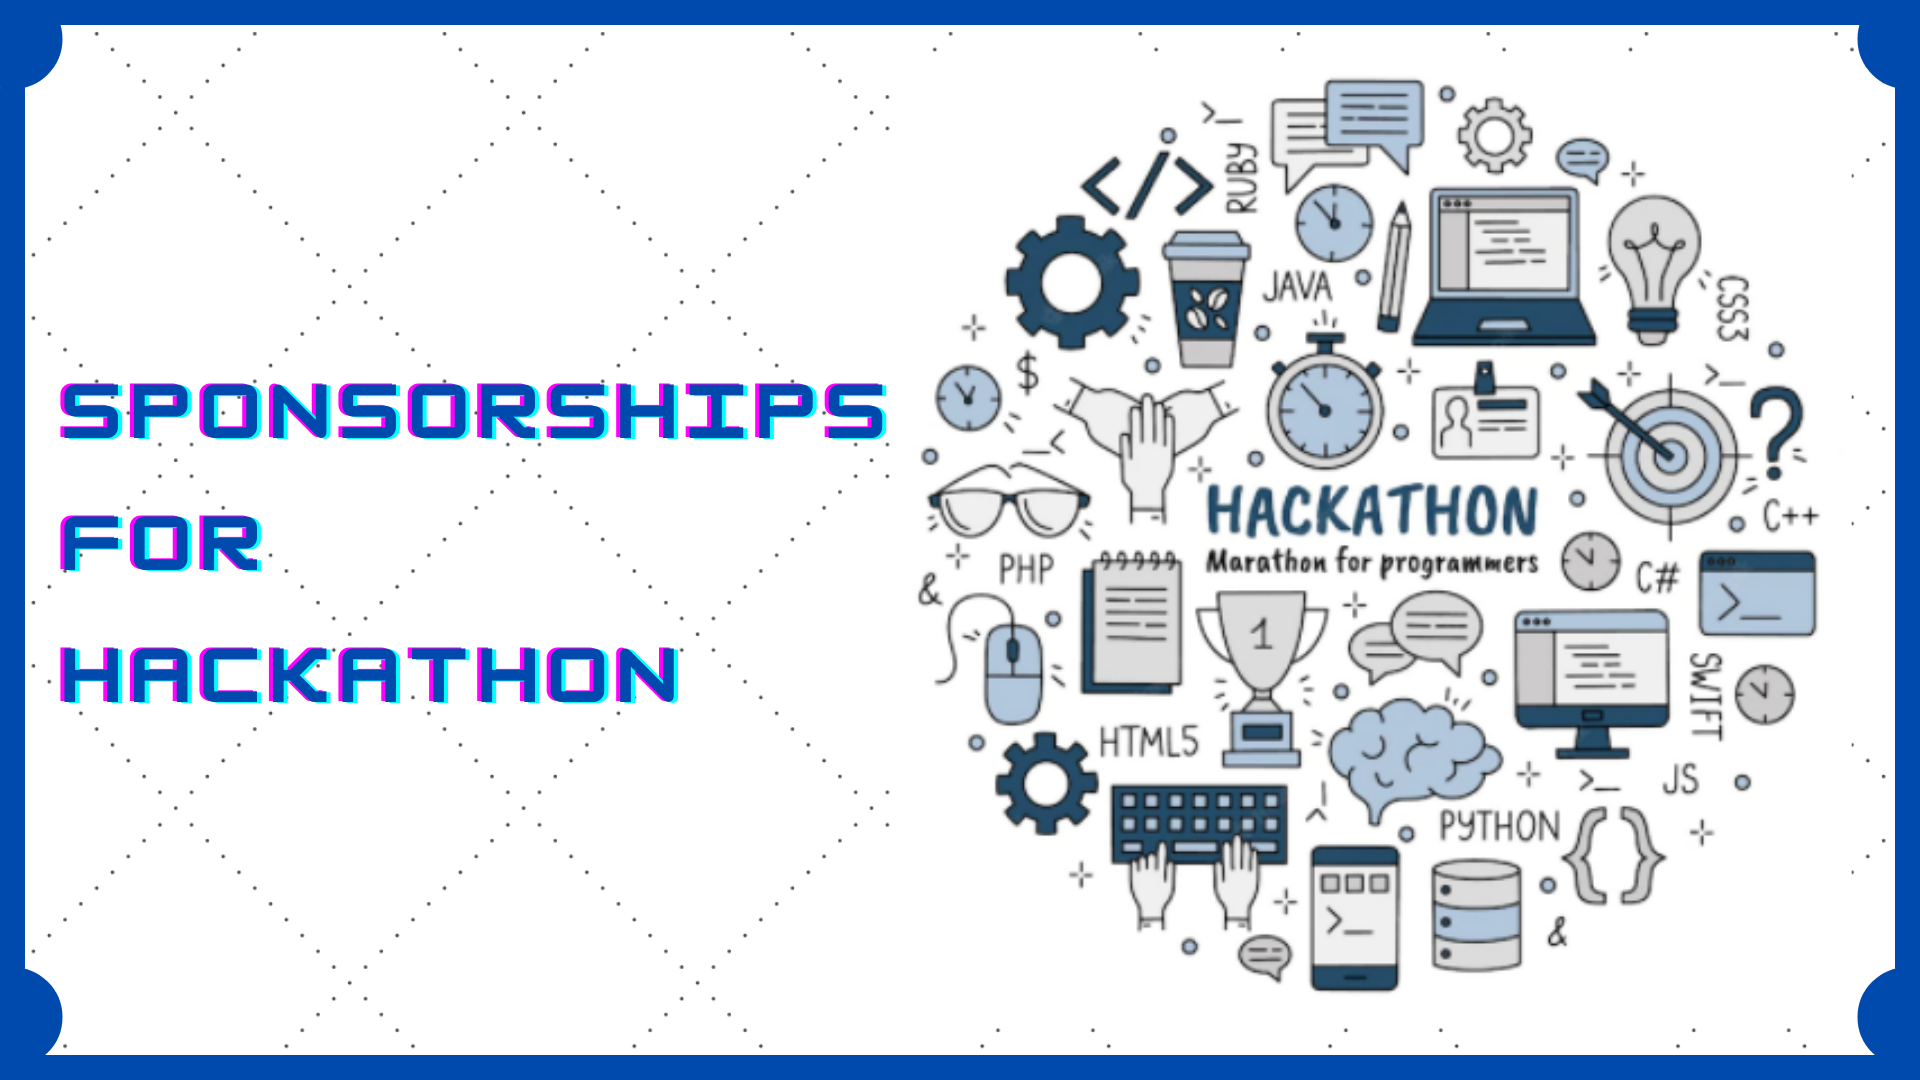 Sponsorships For Hackathon